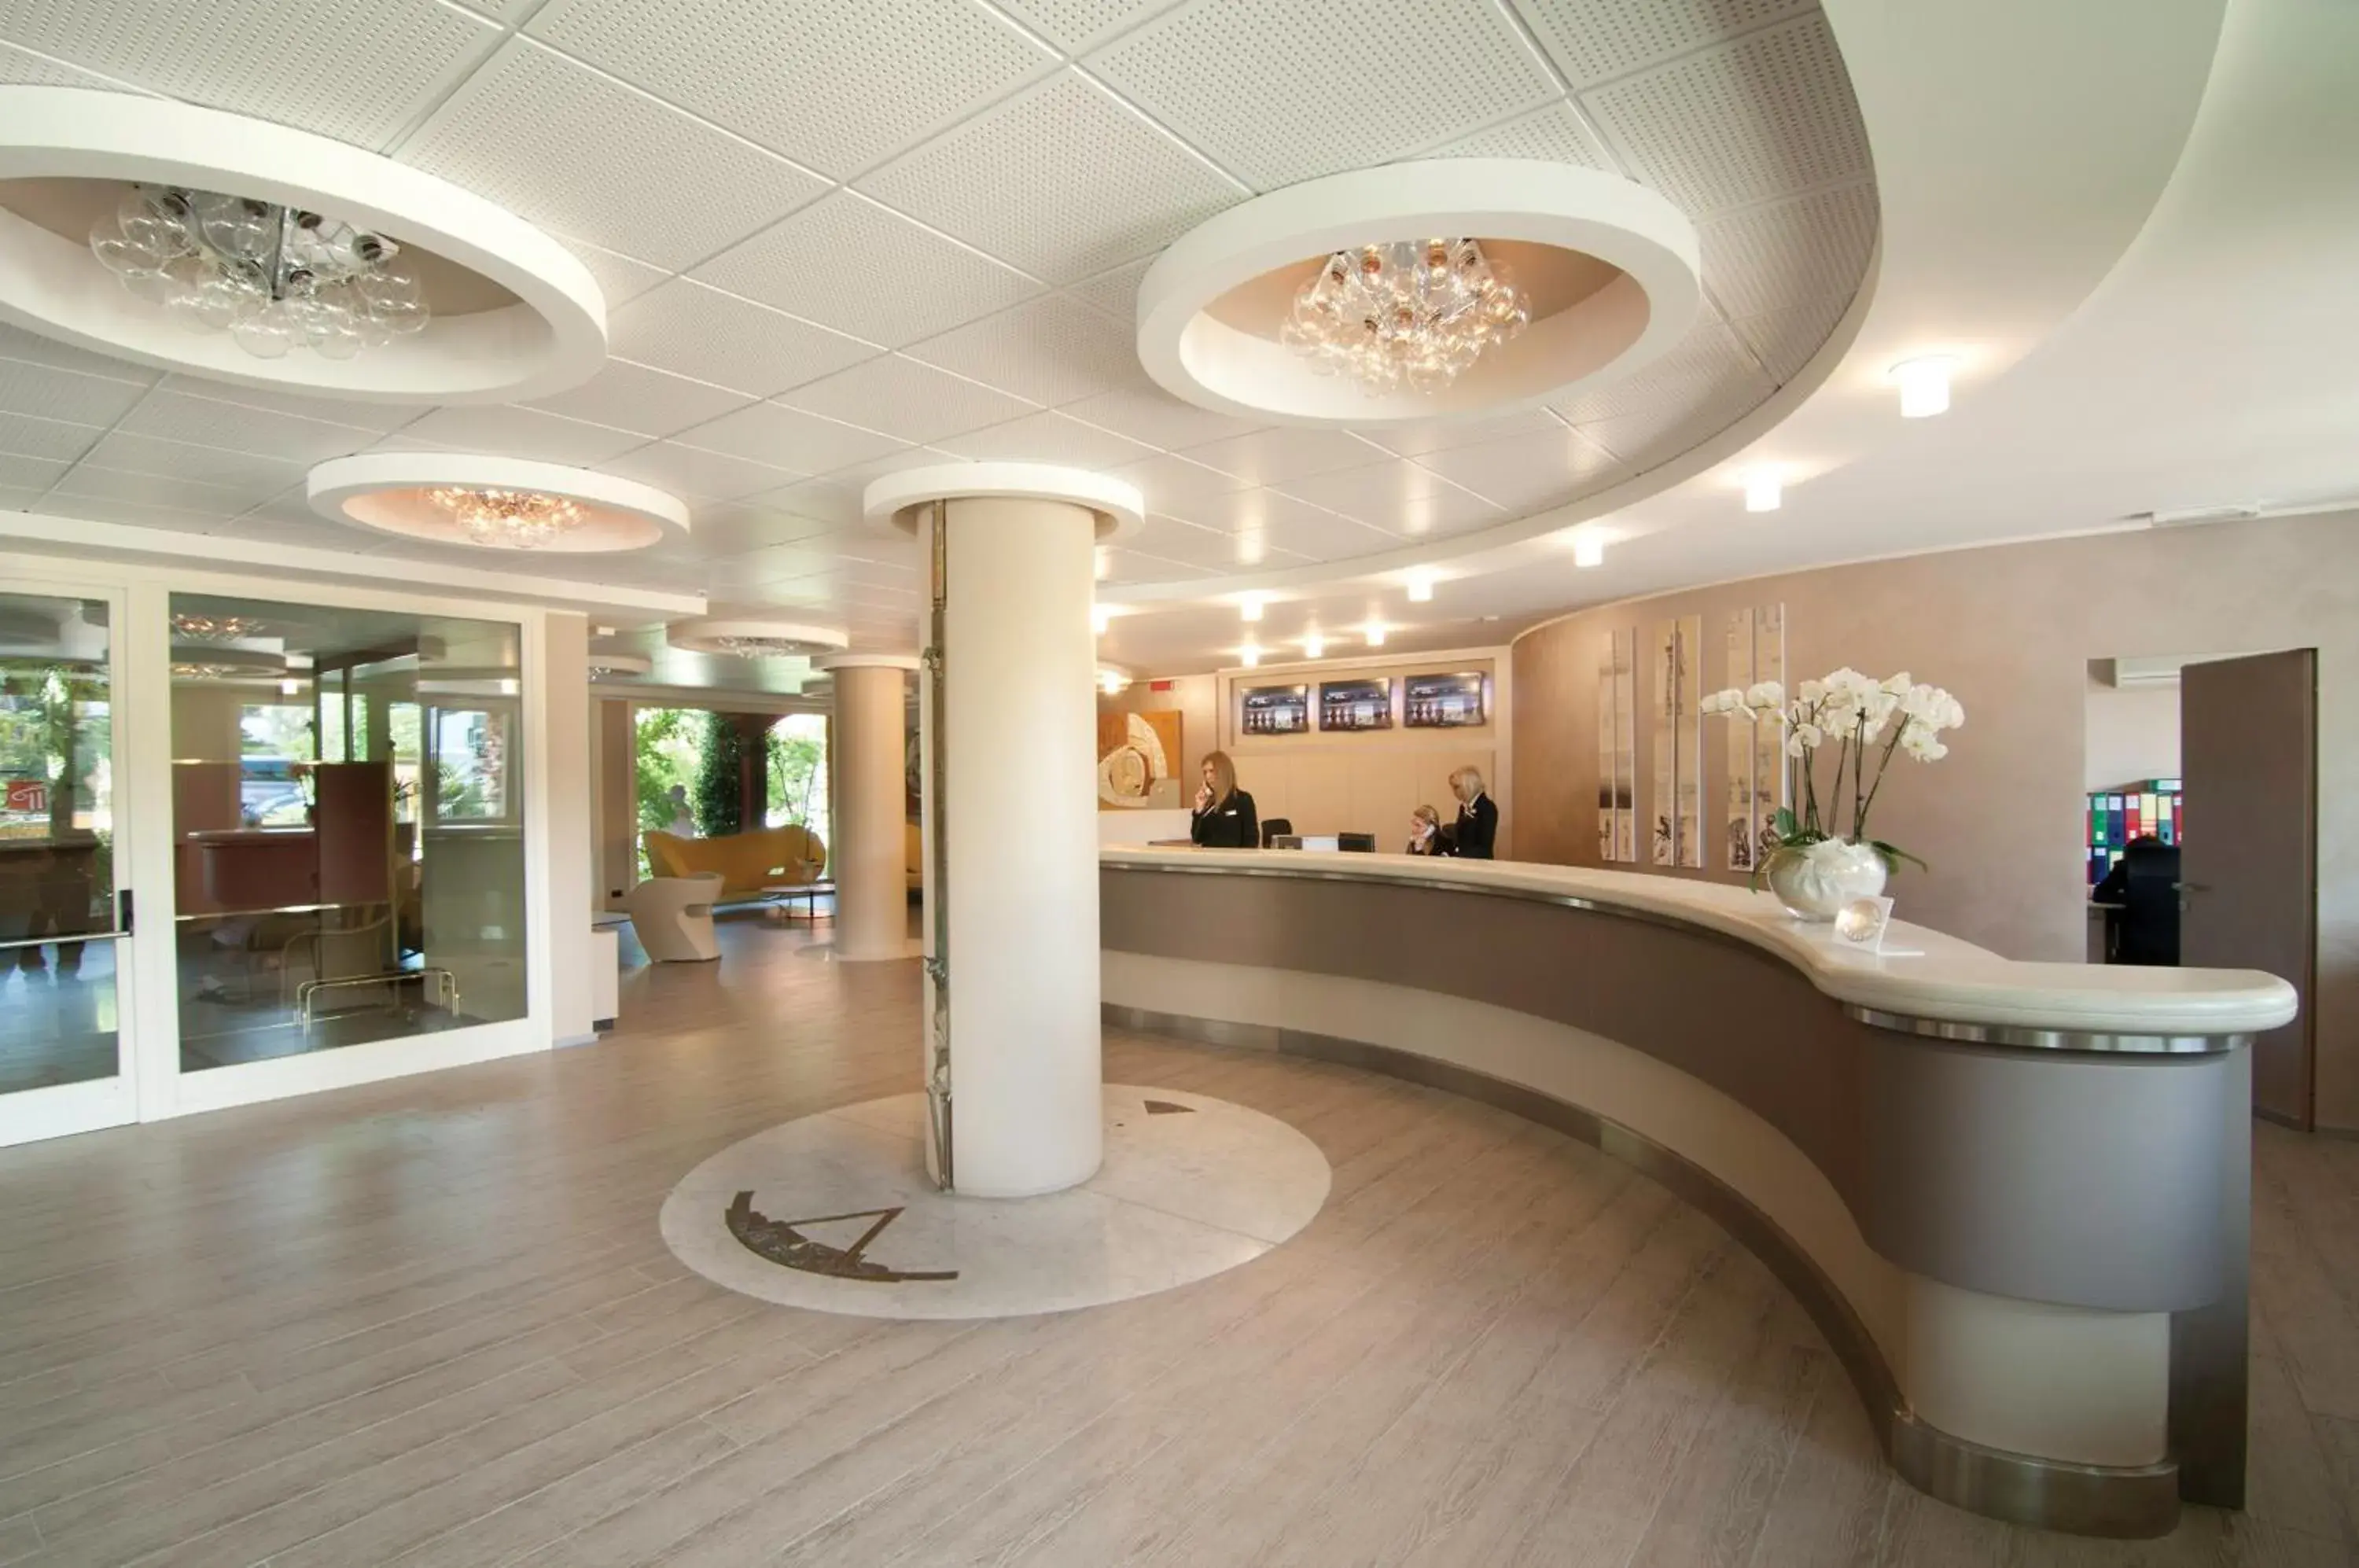 Lobby or reception, Lobby/Reception in Parc Hotel Gritti